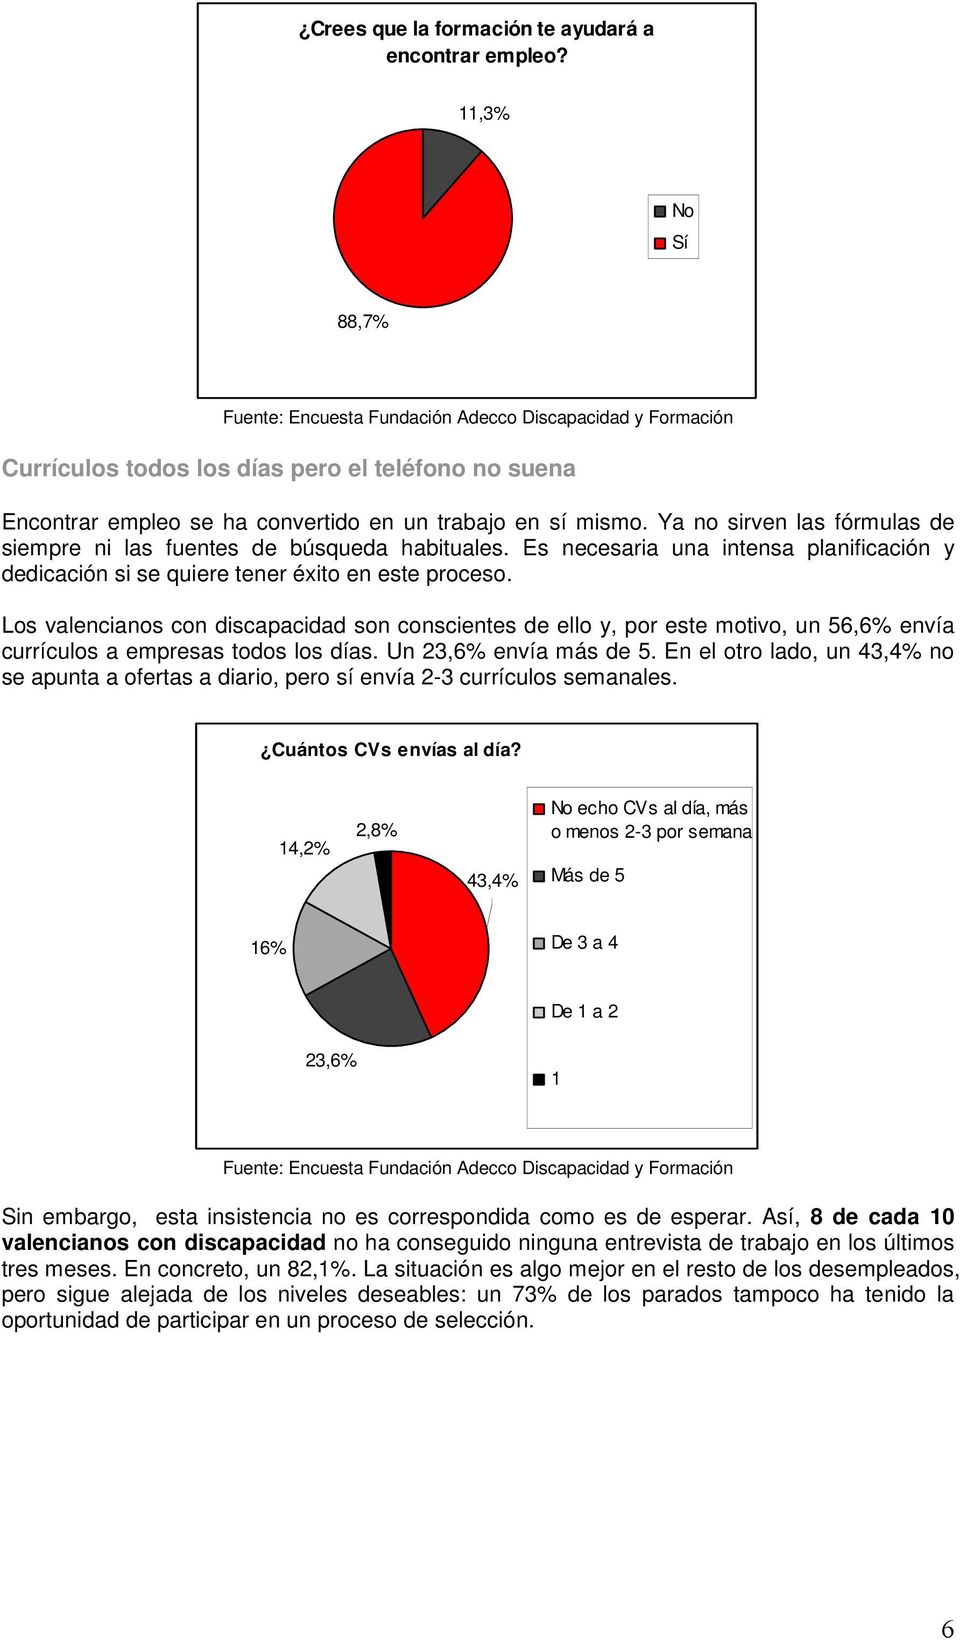 Los valencianos con discapacidad son conscientes de ello y, por este motivo, un 56,6% envía currículos a empresas todos los días. Un 23,6% envía más de 5.